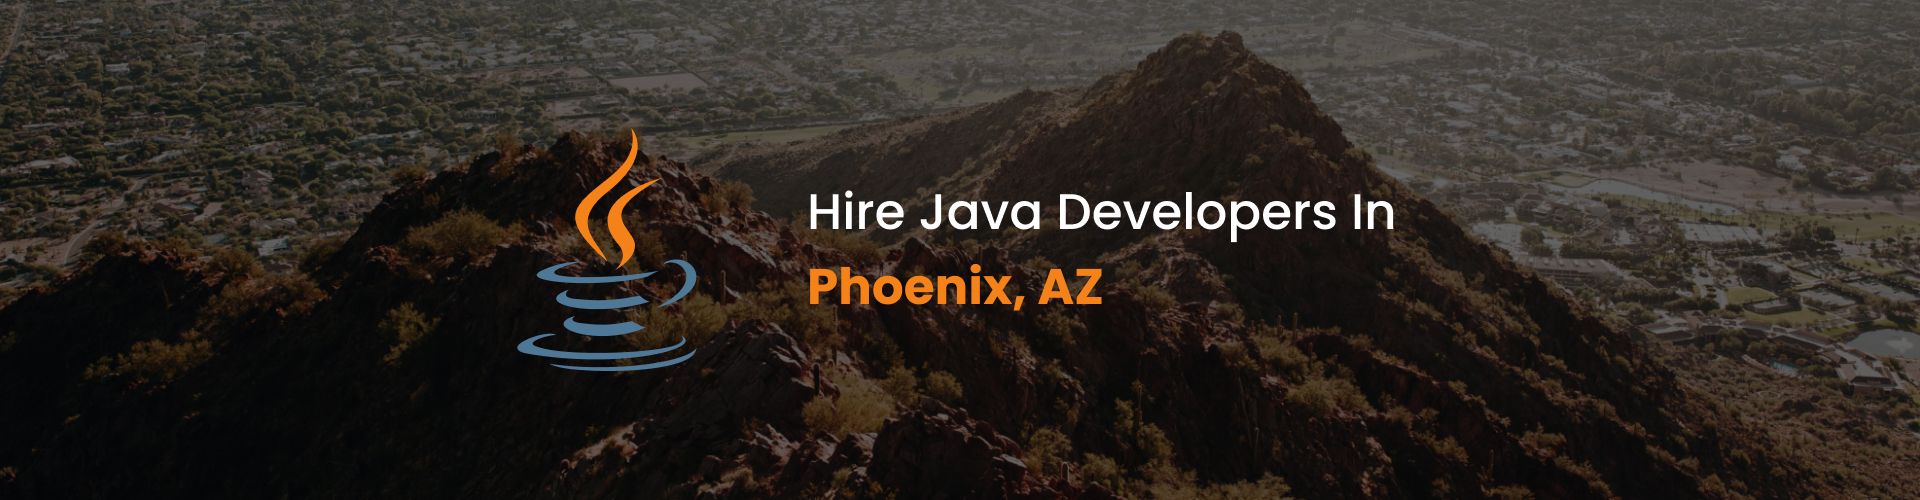 hire java developers in phoenix